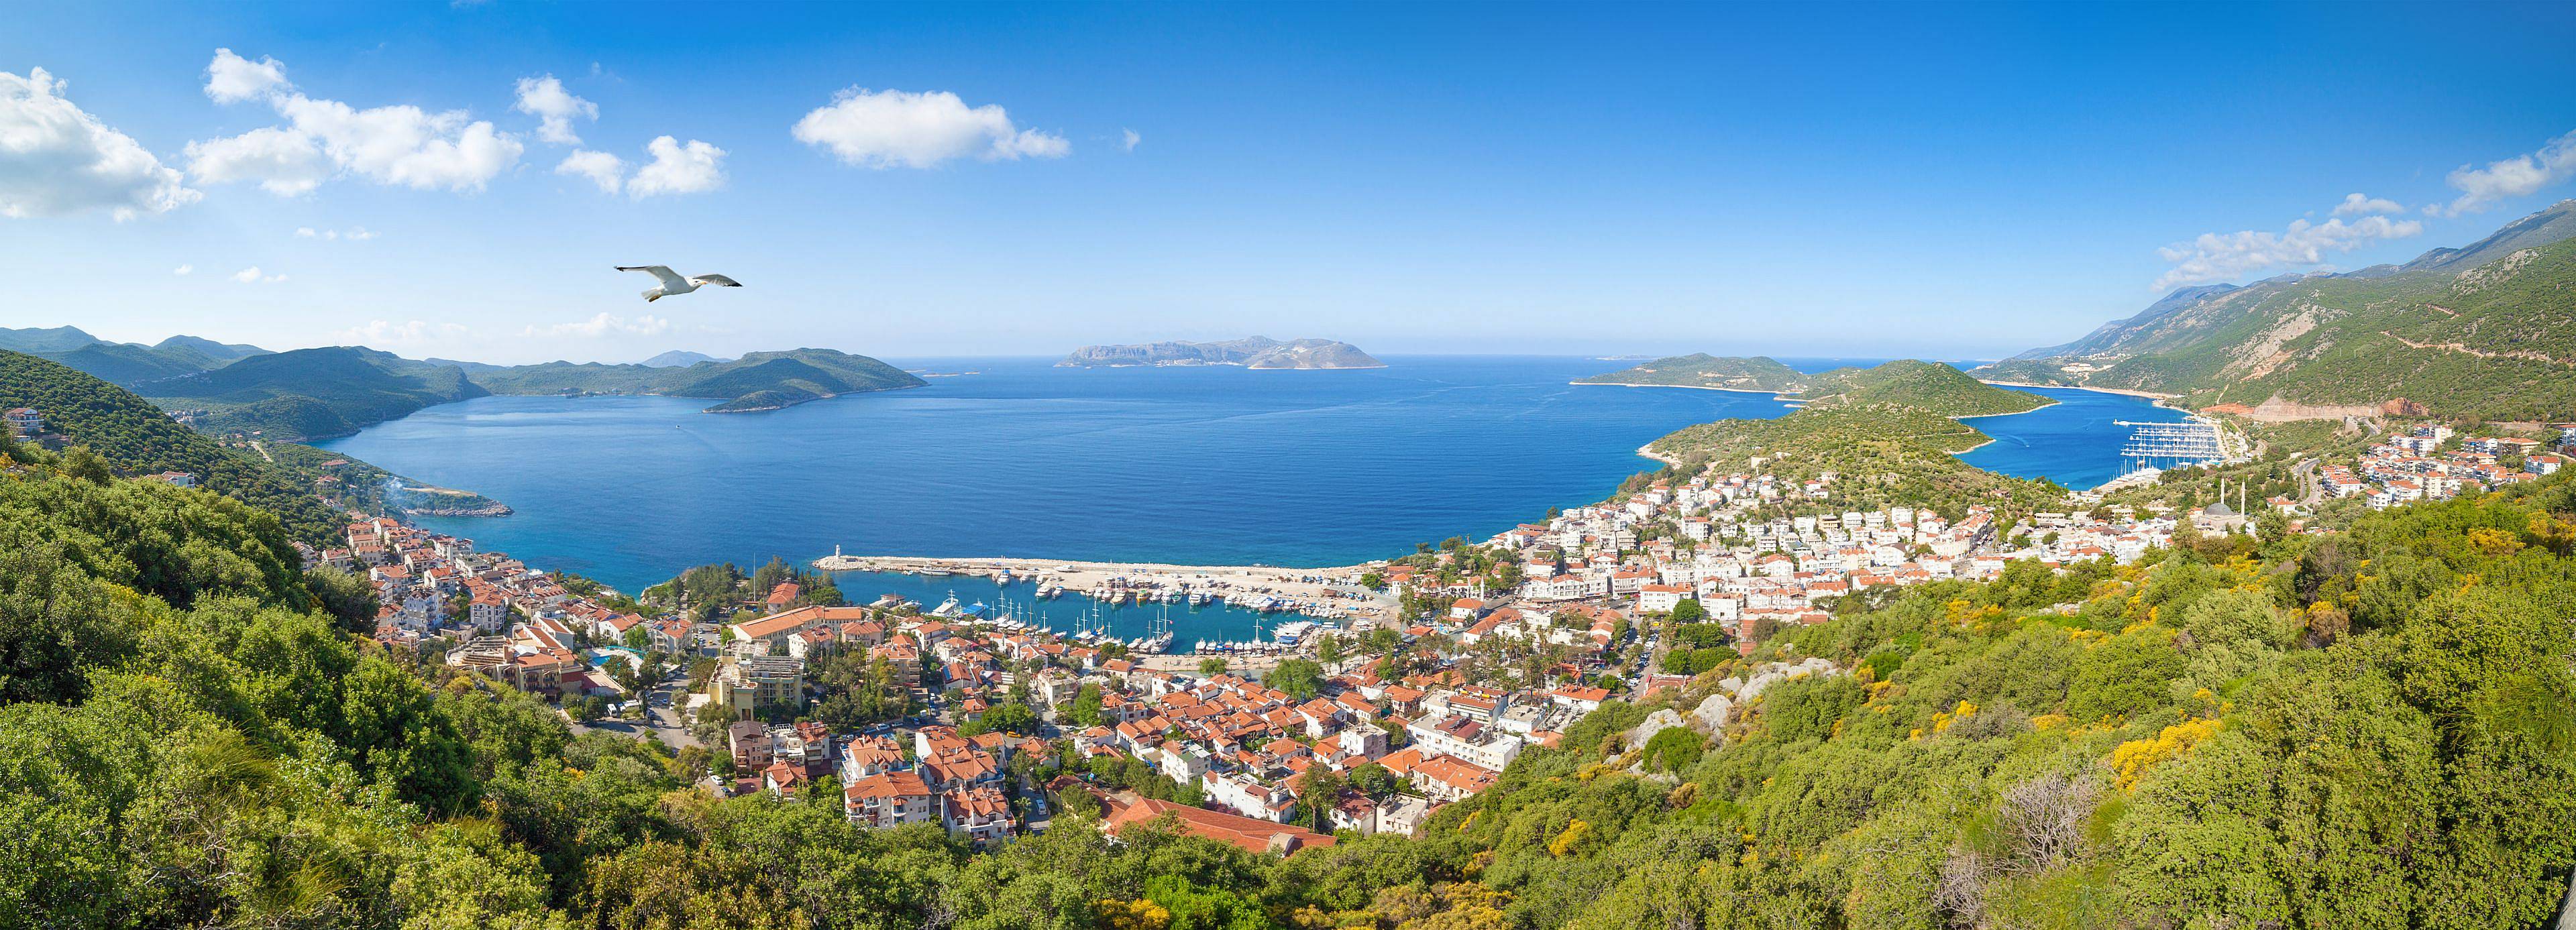 Les paysages magnifiques de la côte Lycienne en autotour